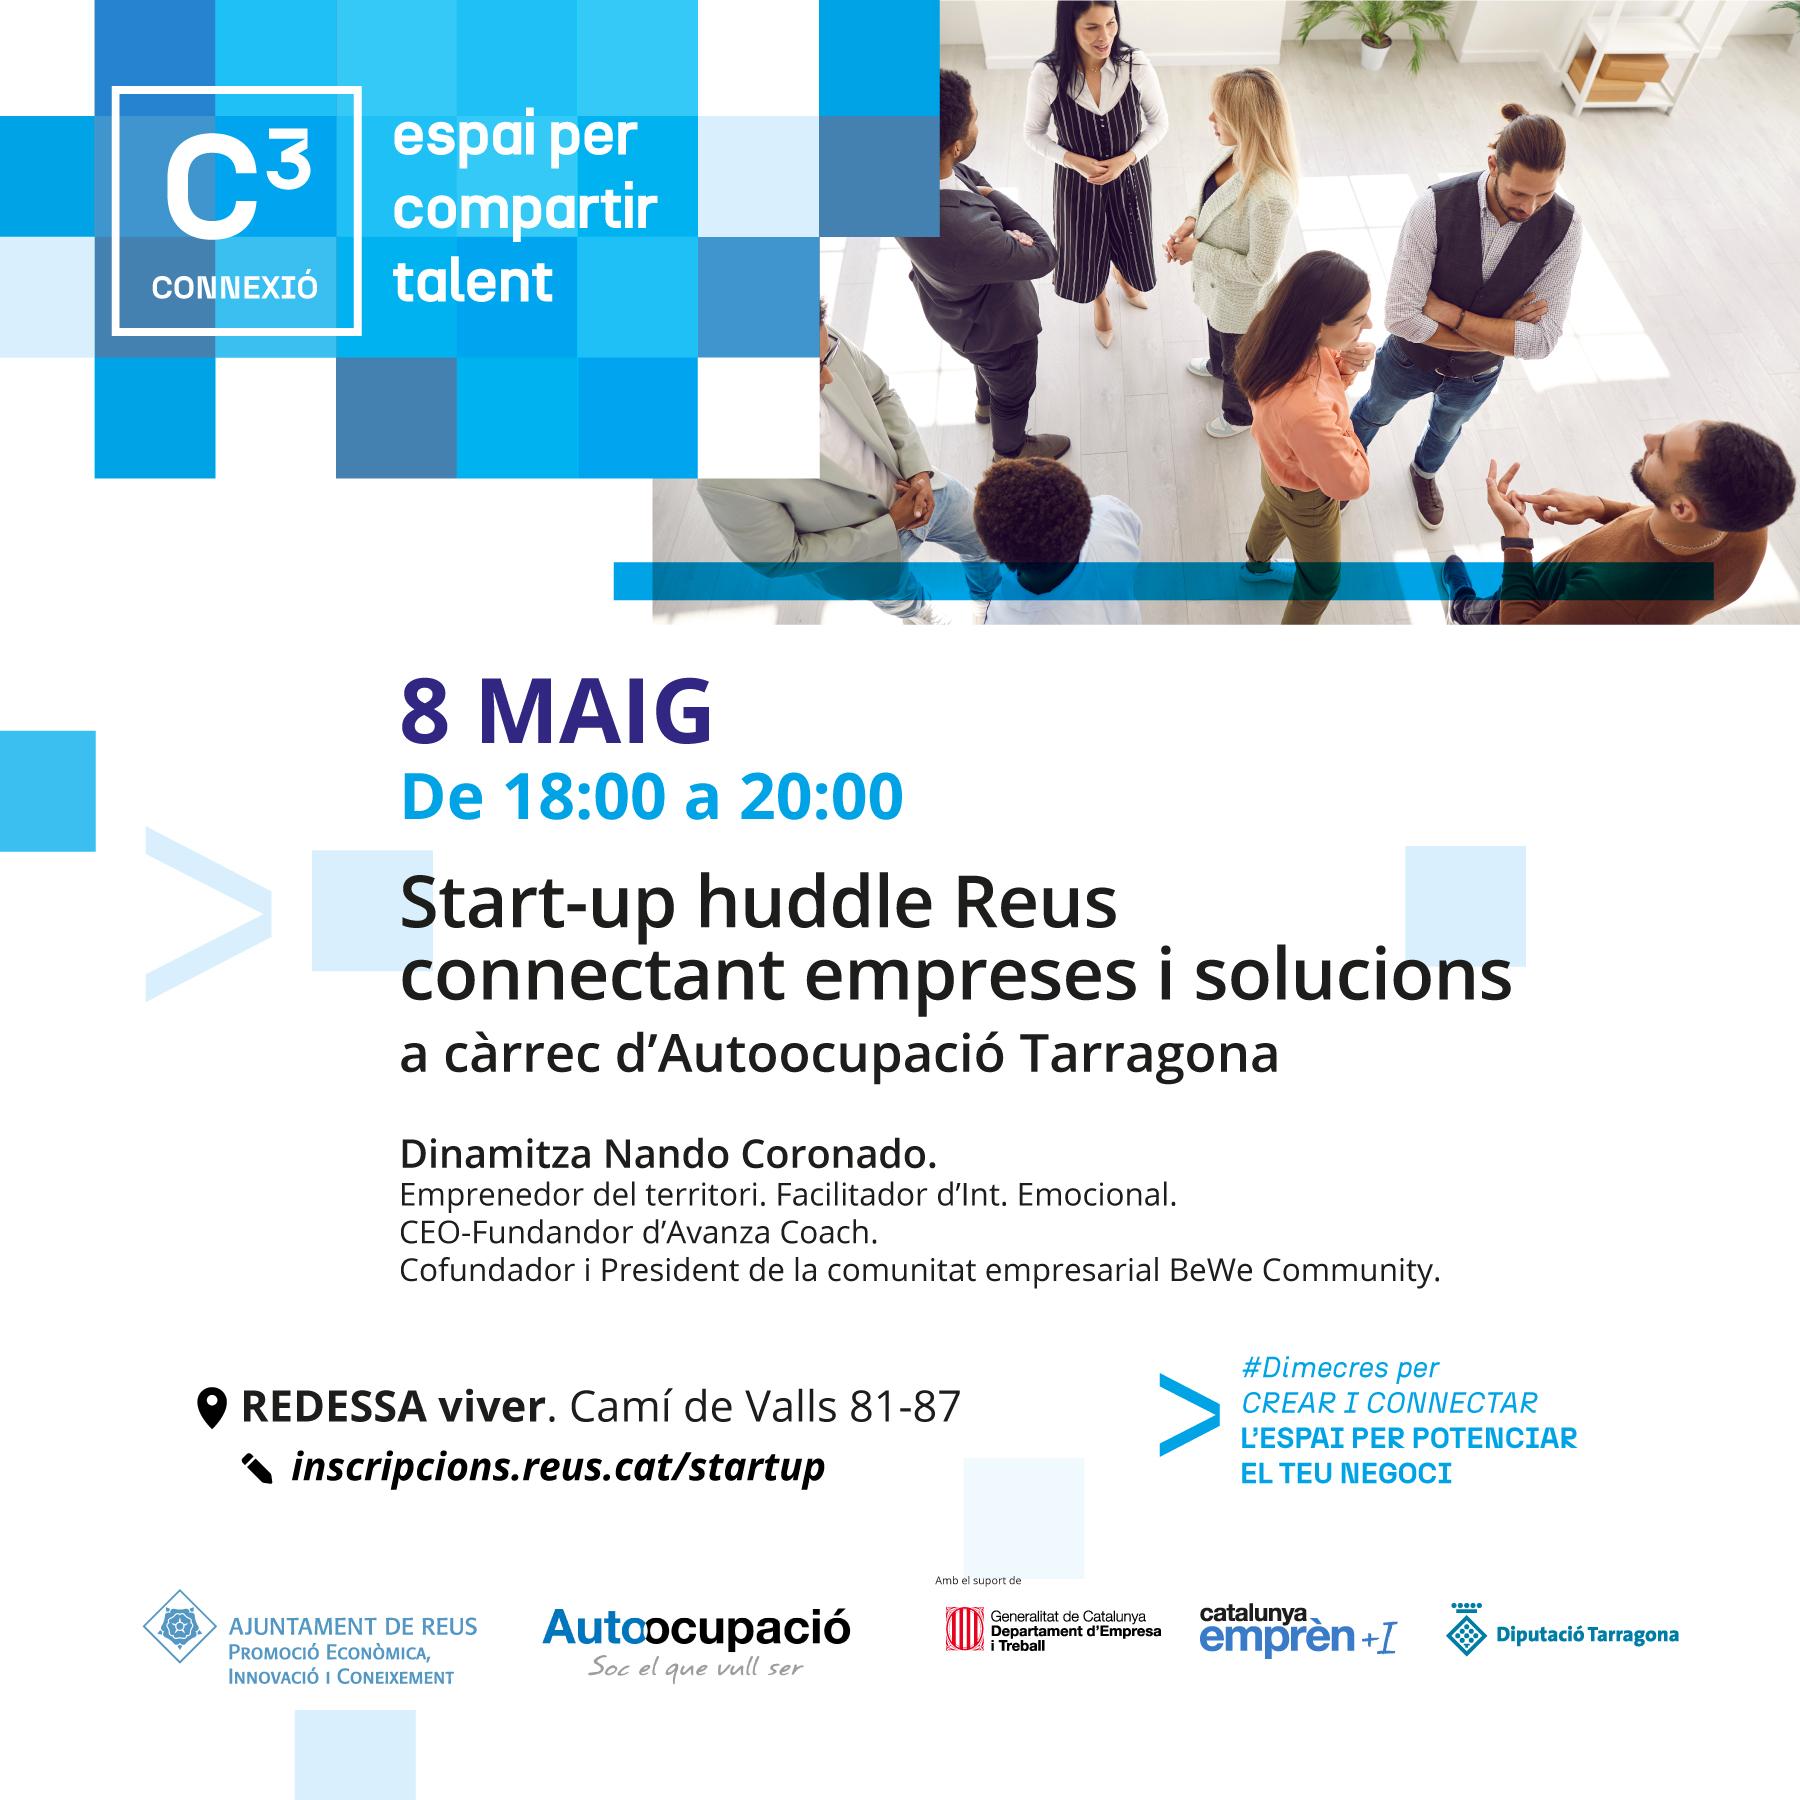 Start-up huddle Reus, conectando empresas y solucionesE